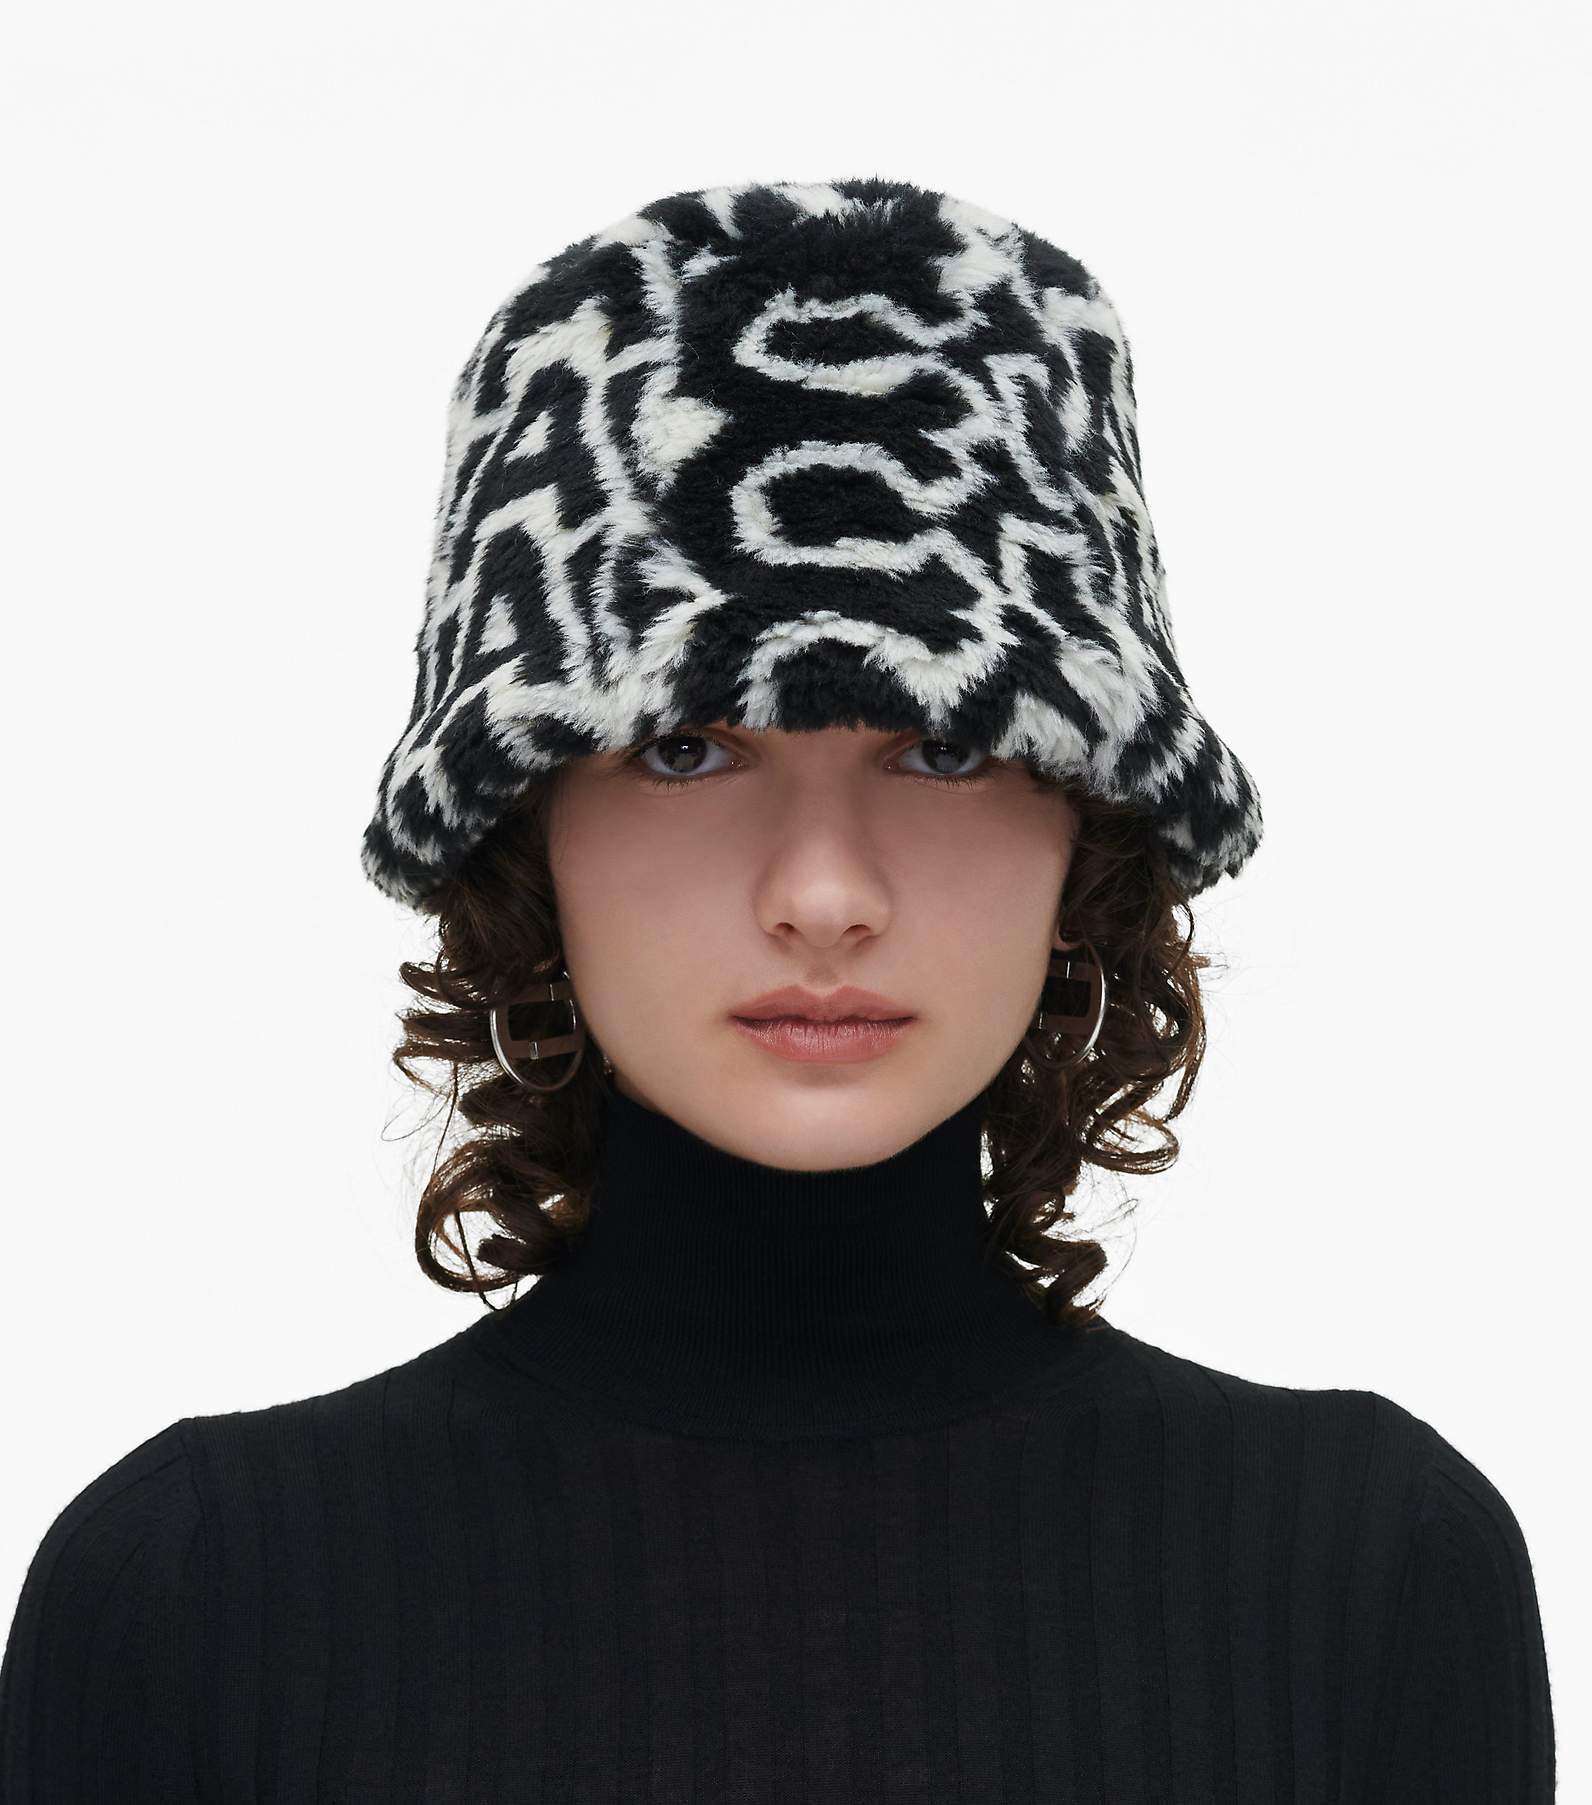 Marc Jacobs Monogram Bucket Hat in Grey